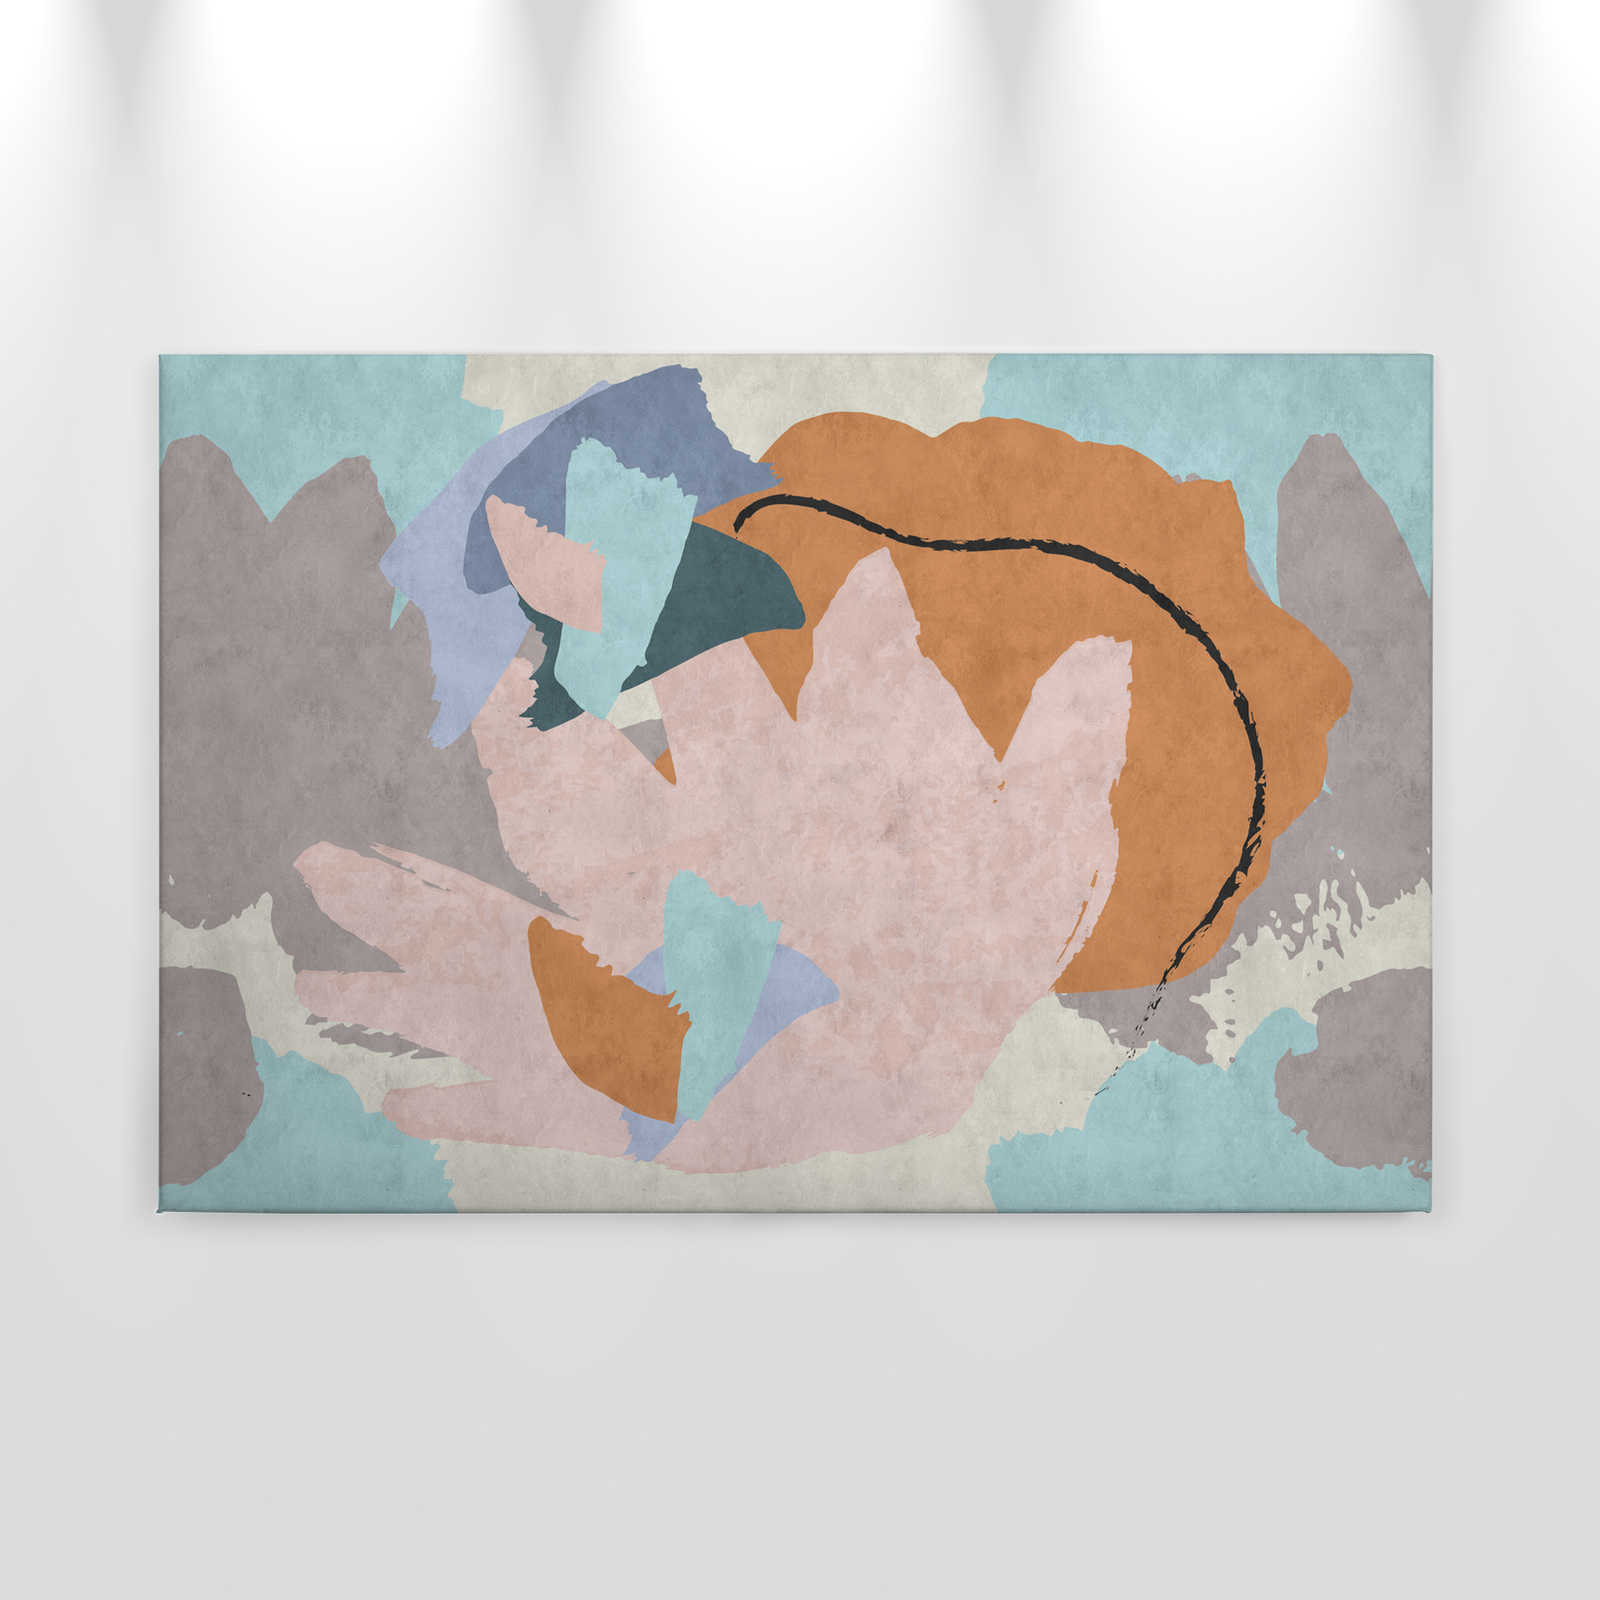             Collage floreale 2 - pittura su tela moderna arte astratta in struttura di carta assorbente - 0,90 m x 0,60 m
        